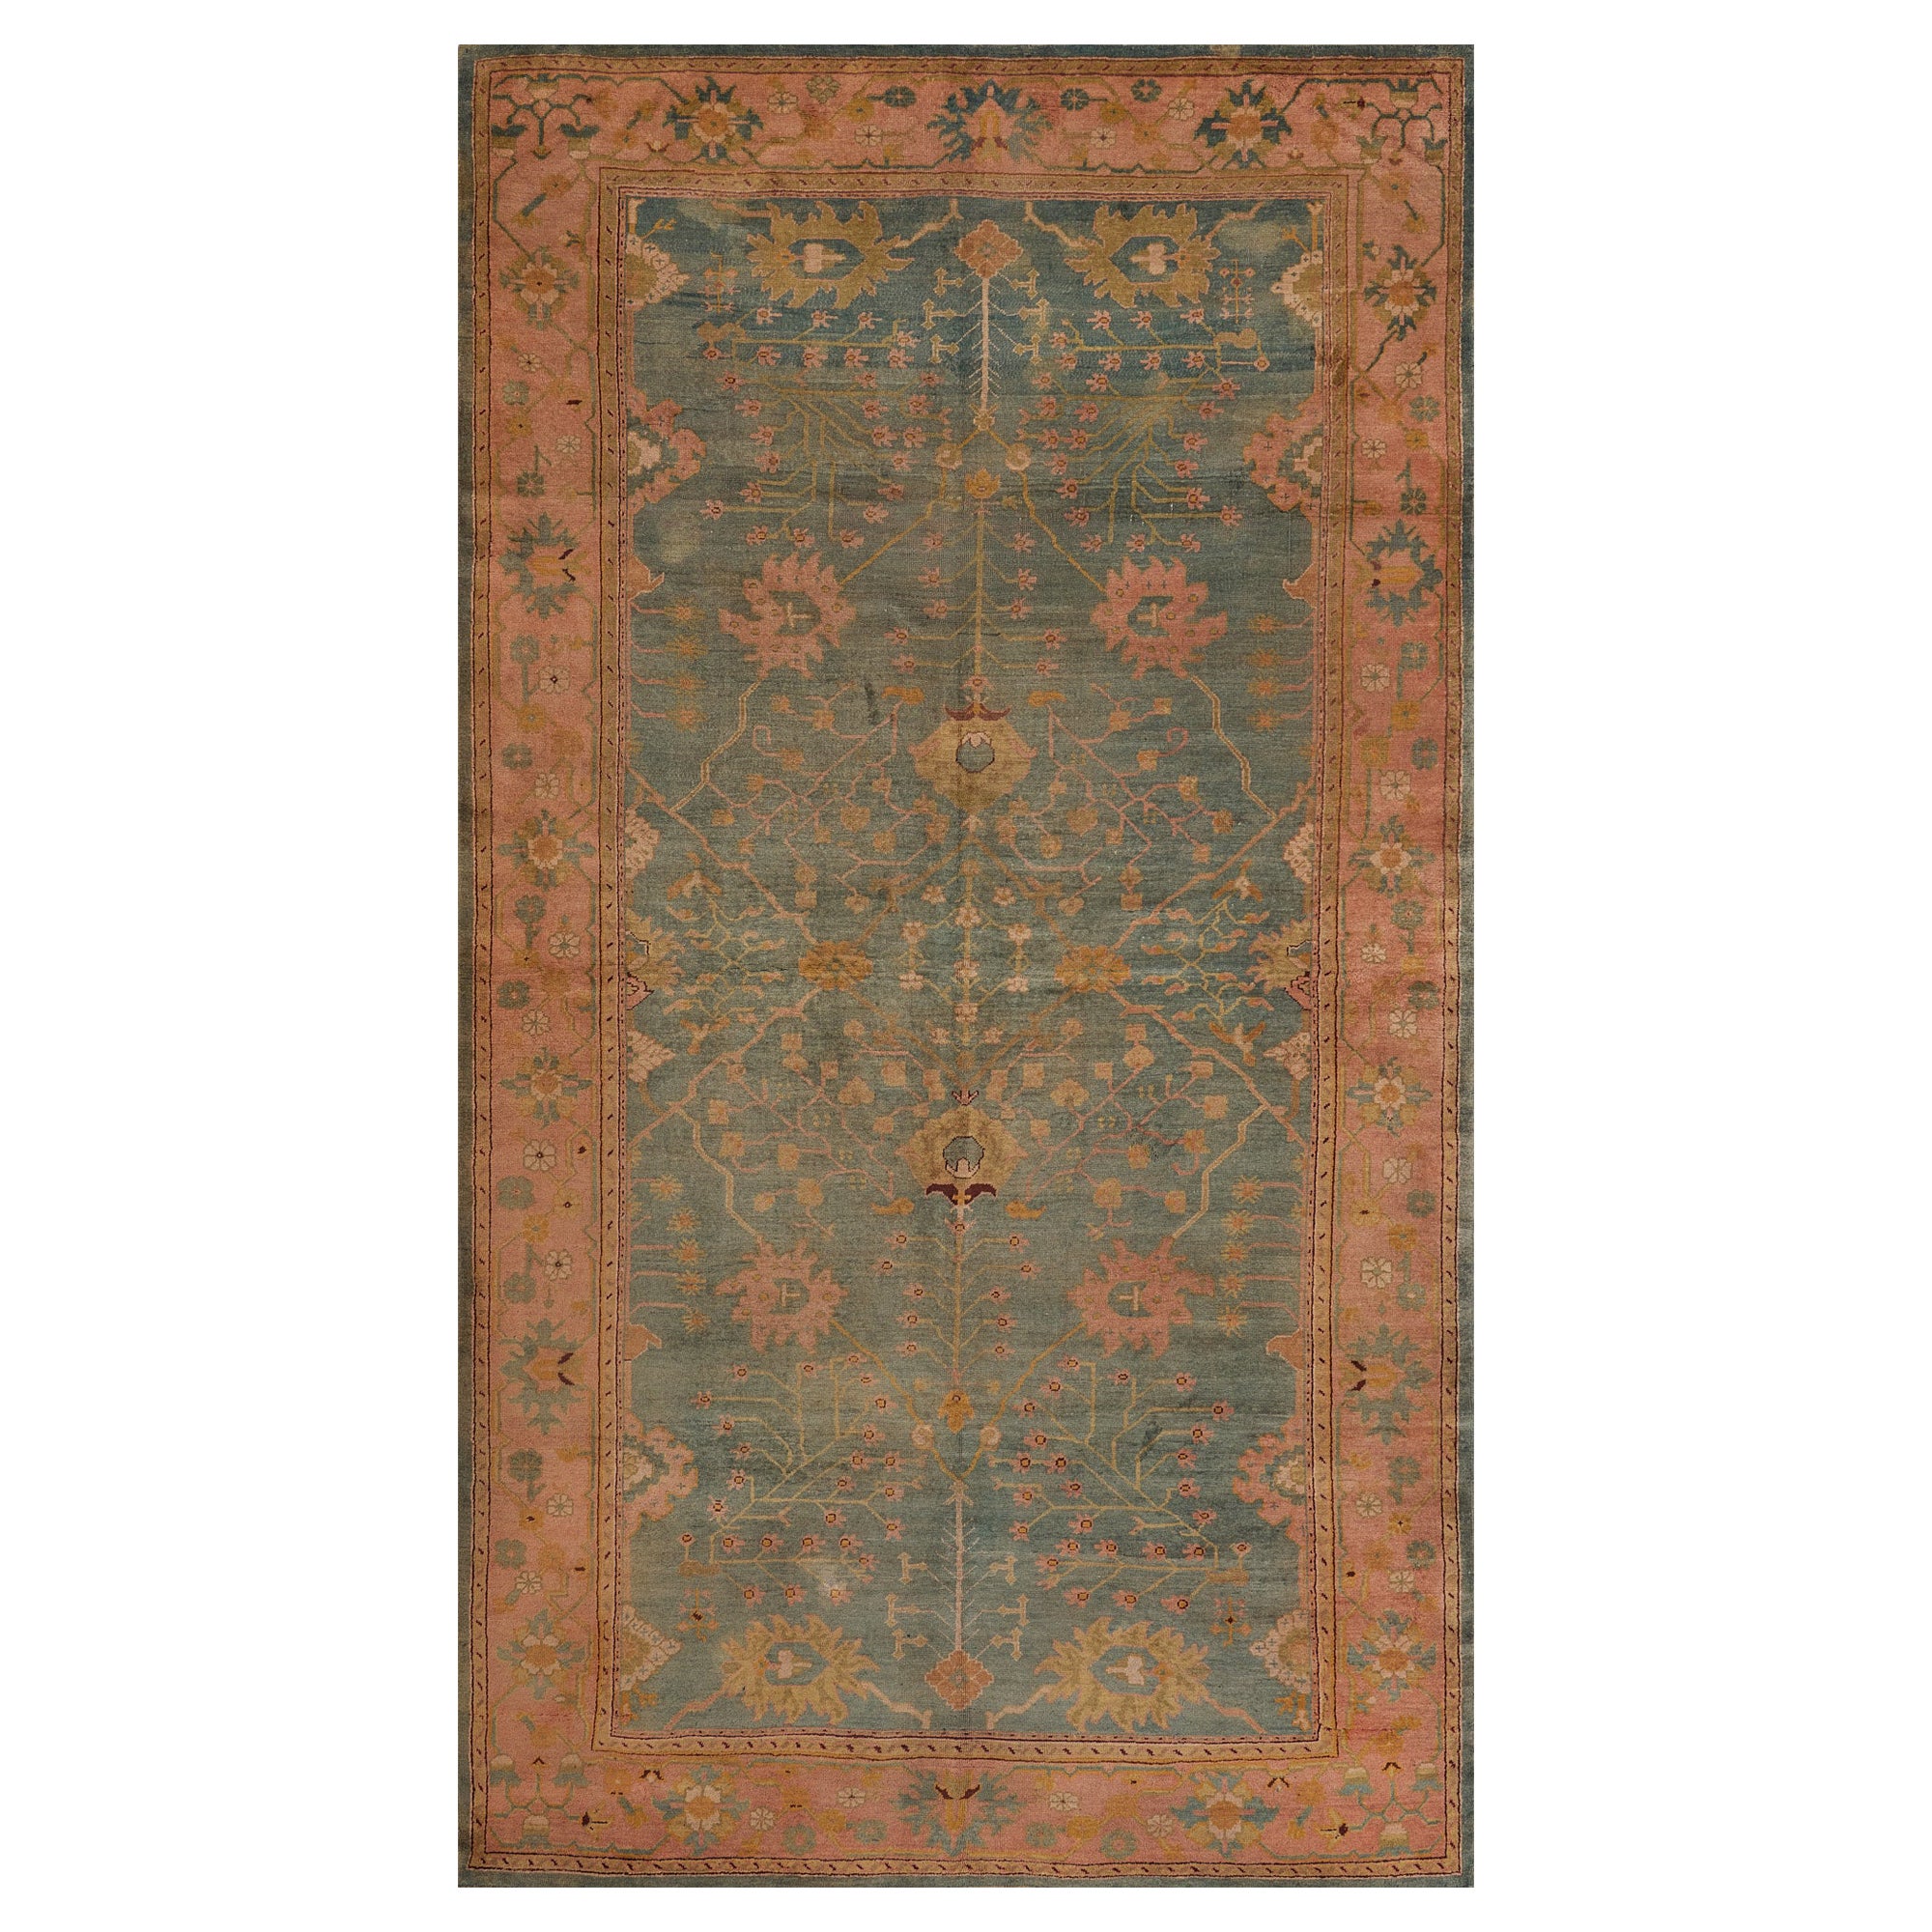 Handgeknüpfter antiker, geblümter Oushak-Teppich aus der Zeit um 1880